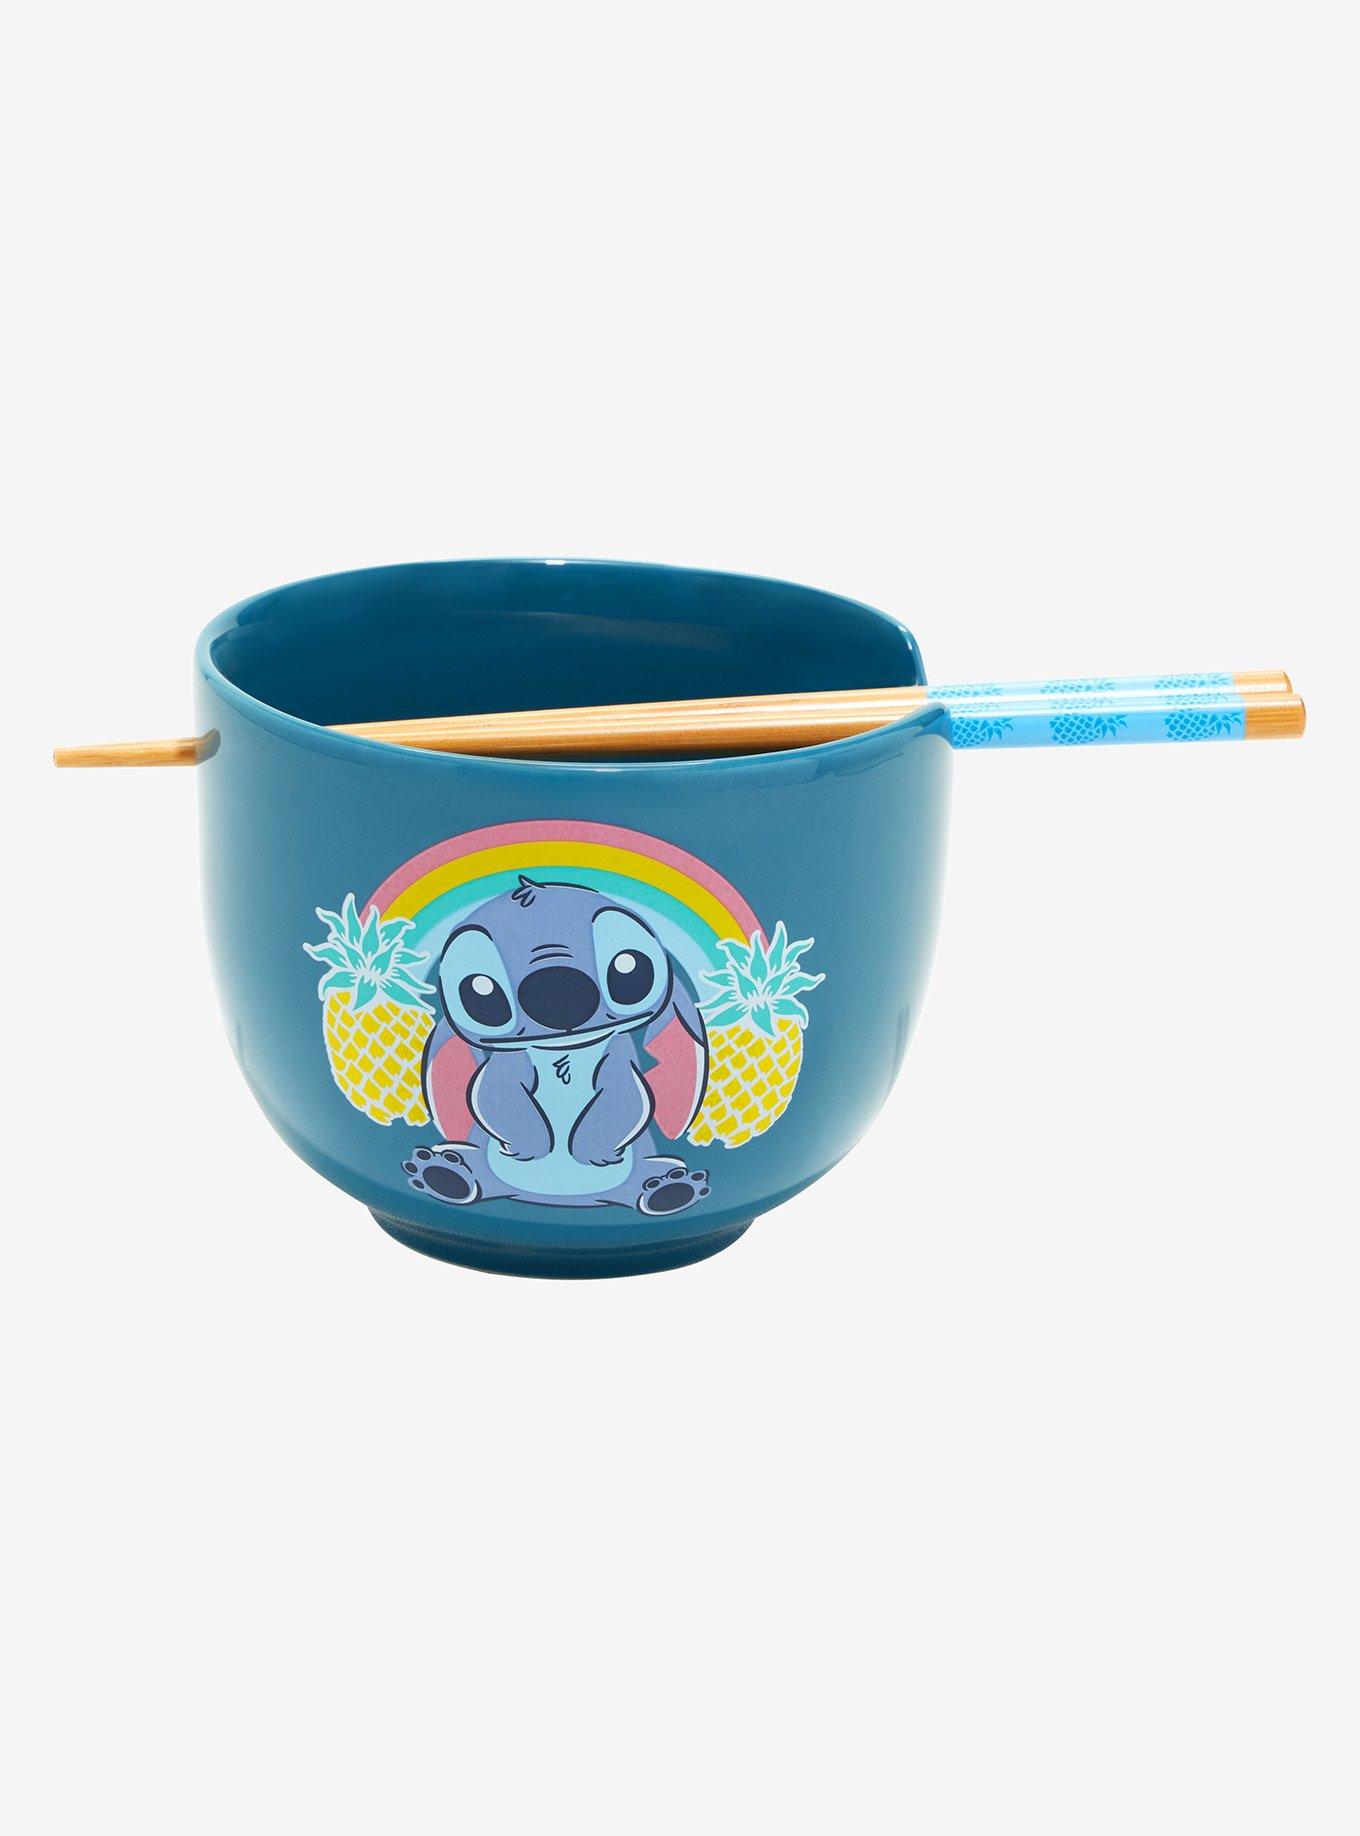 Disney Stitch Ramen Bowl w/Chopsticks Lilo And Stitch Set 3